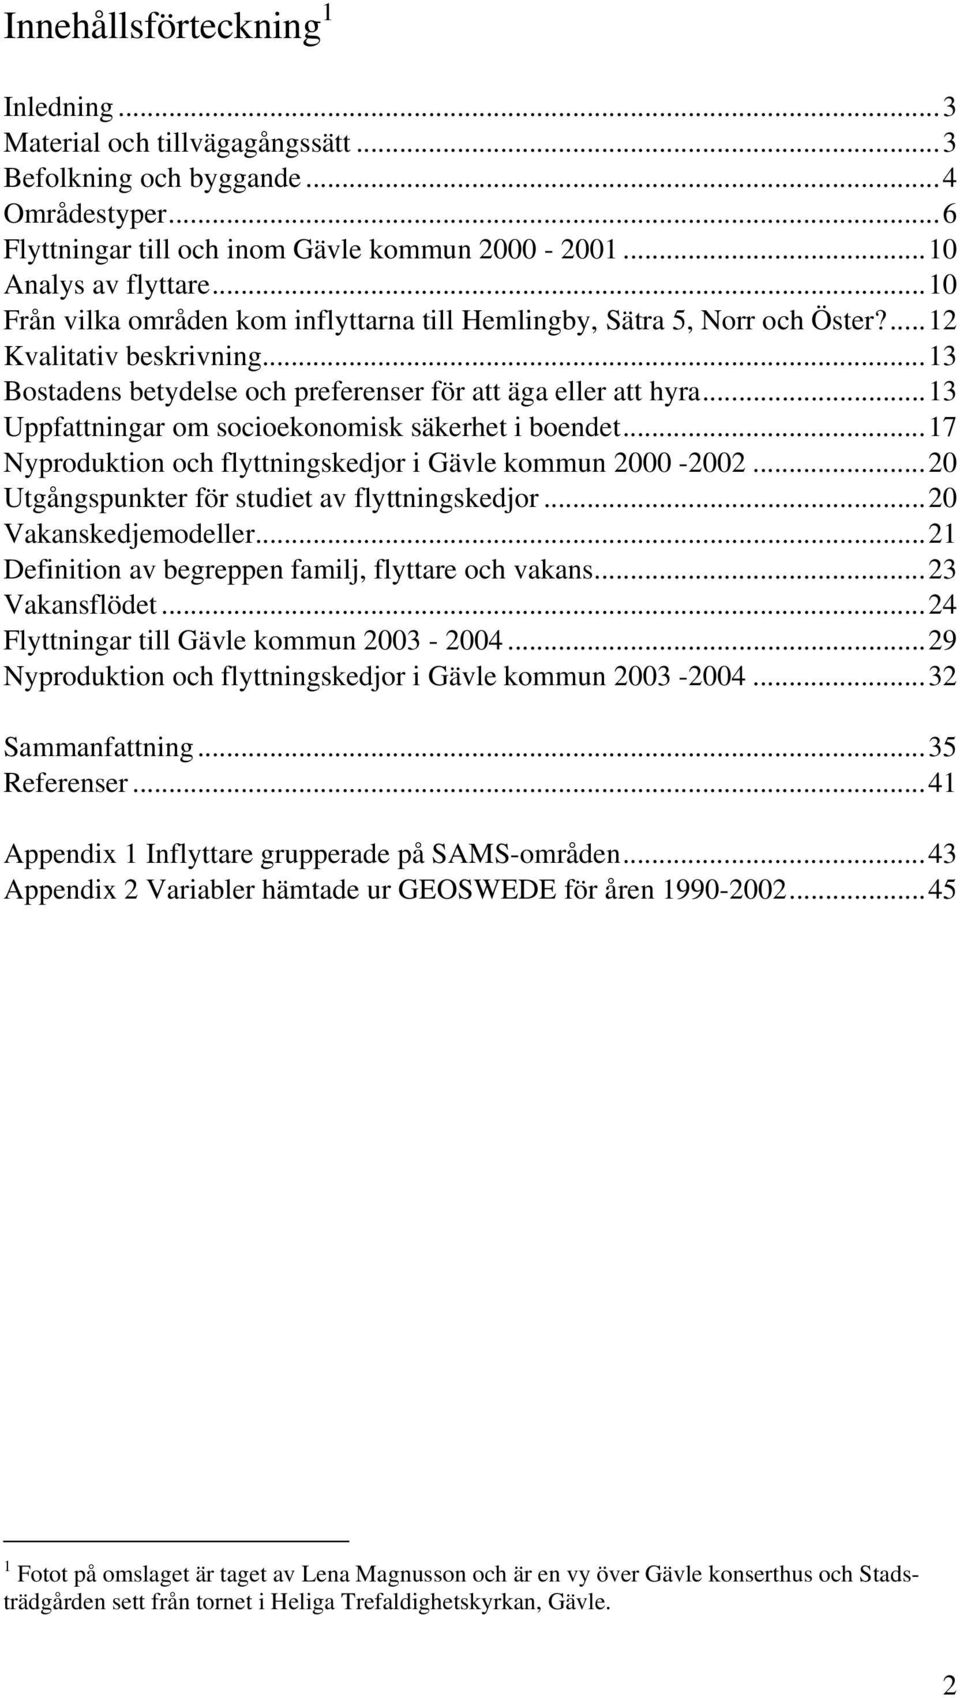 ..13 Uppfattningar om socioekonomisk säkerhet i boendet...17 Nyproduktion och flyttningskedjor i Gävle kommun 2000-2002...20 Utgångspunkter för studiet av flyttningskedjor...20 Vakanskedjemodeller.